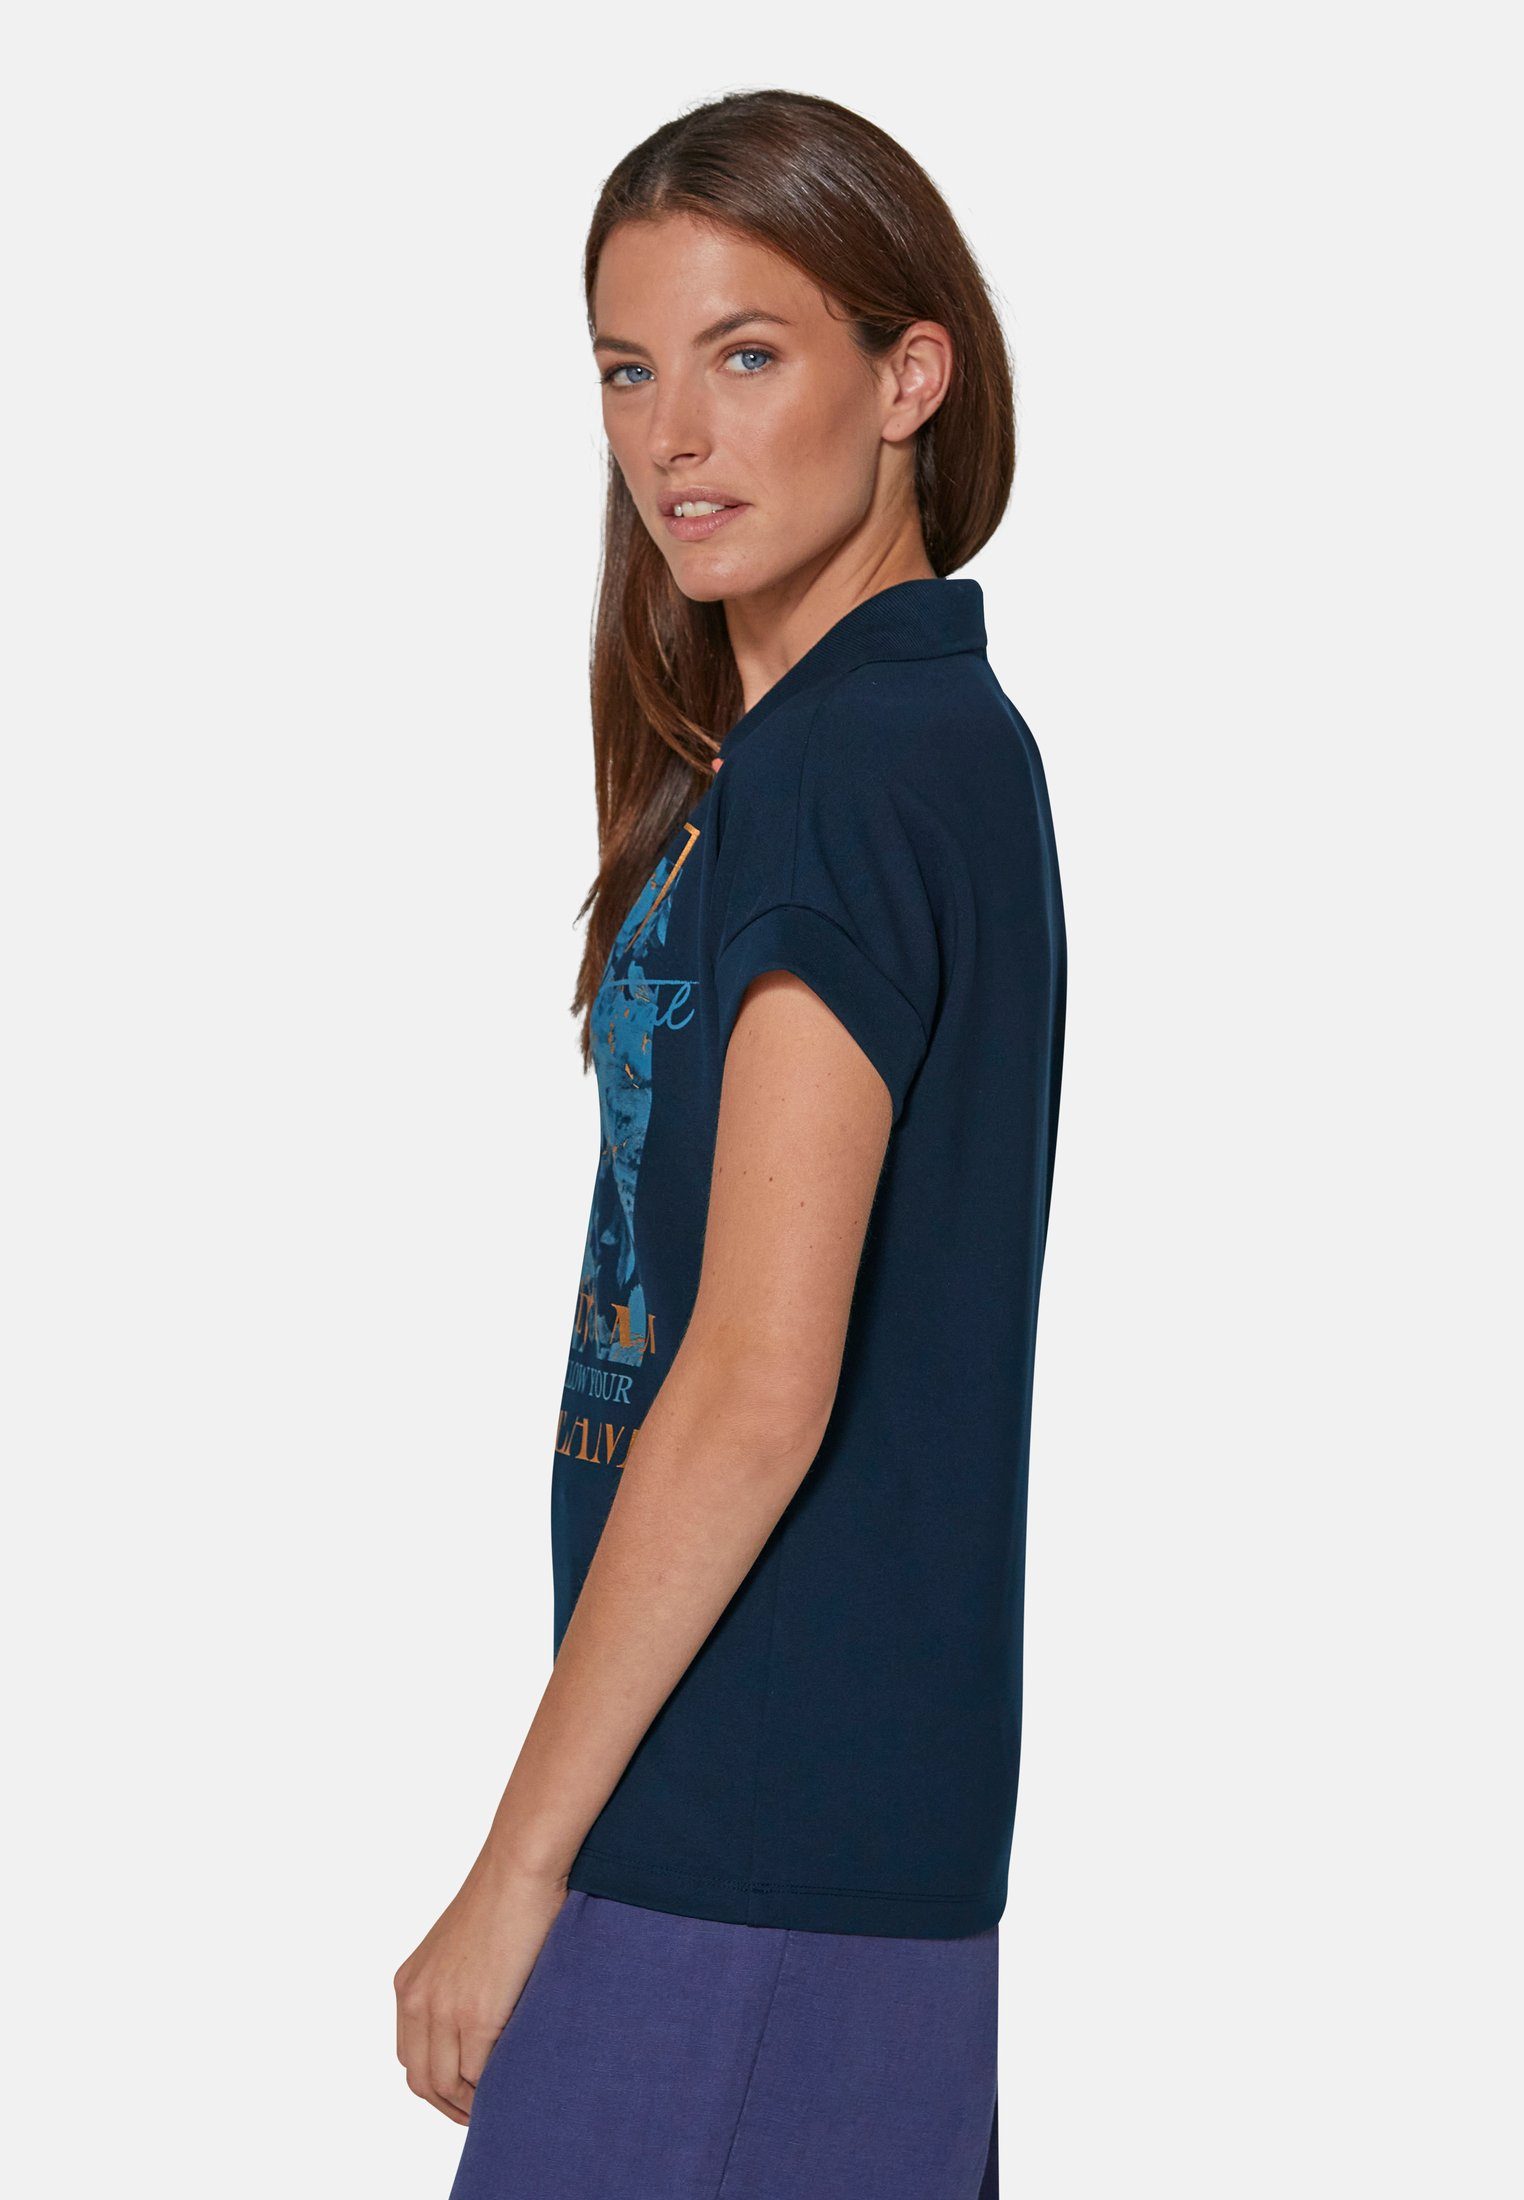 Damen Shirts MADELEINE Poloshirt Bedrucktes Poloshirt